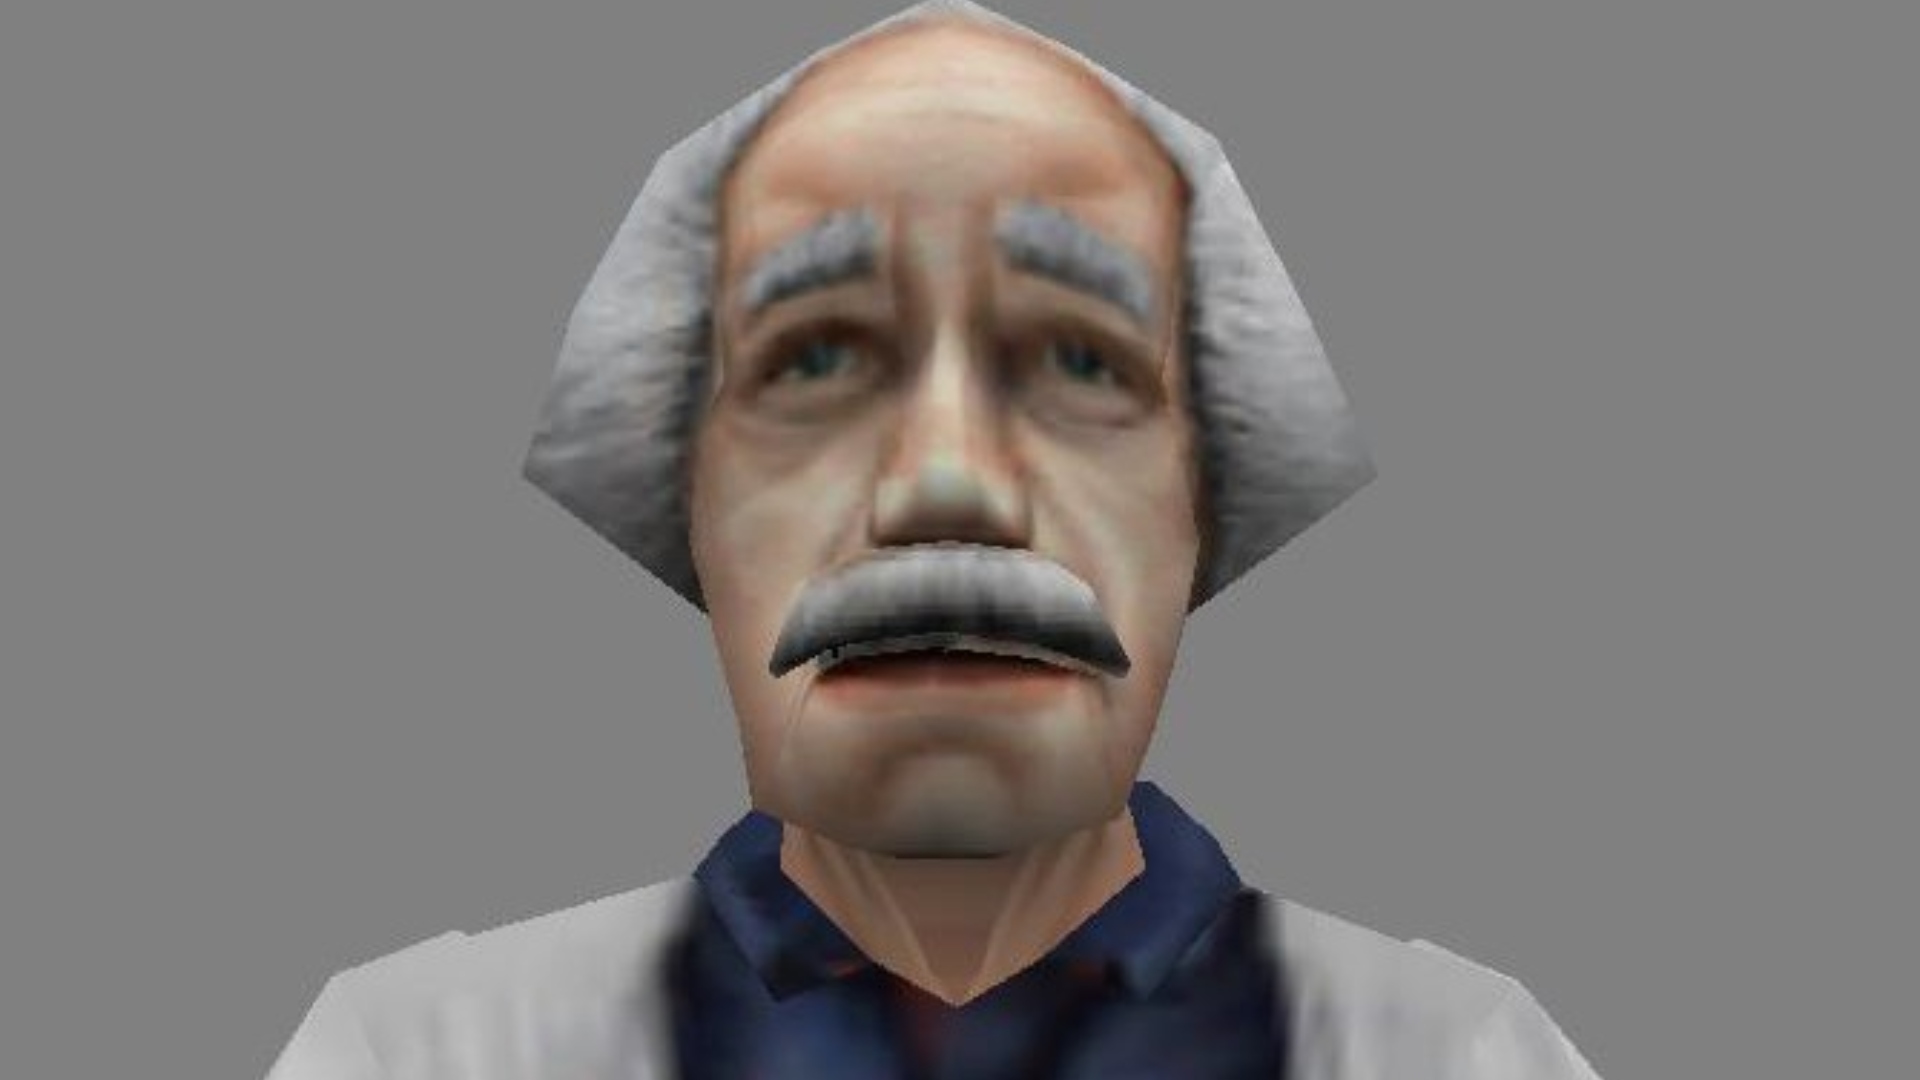 Personajes de Half-Life: un científico del juego Half-Life de Valve FPS que se parece a Einstein